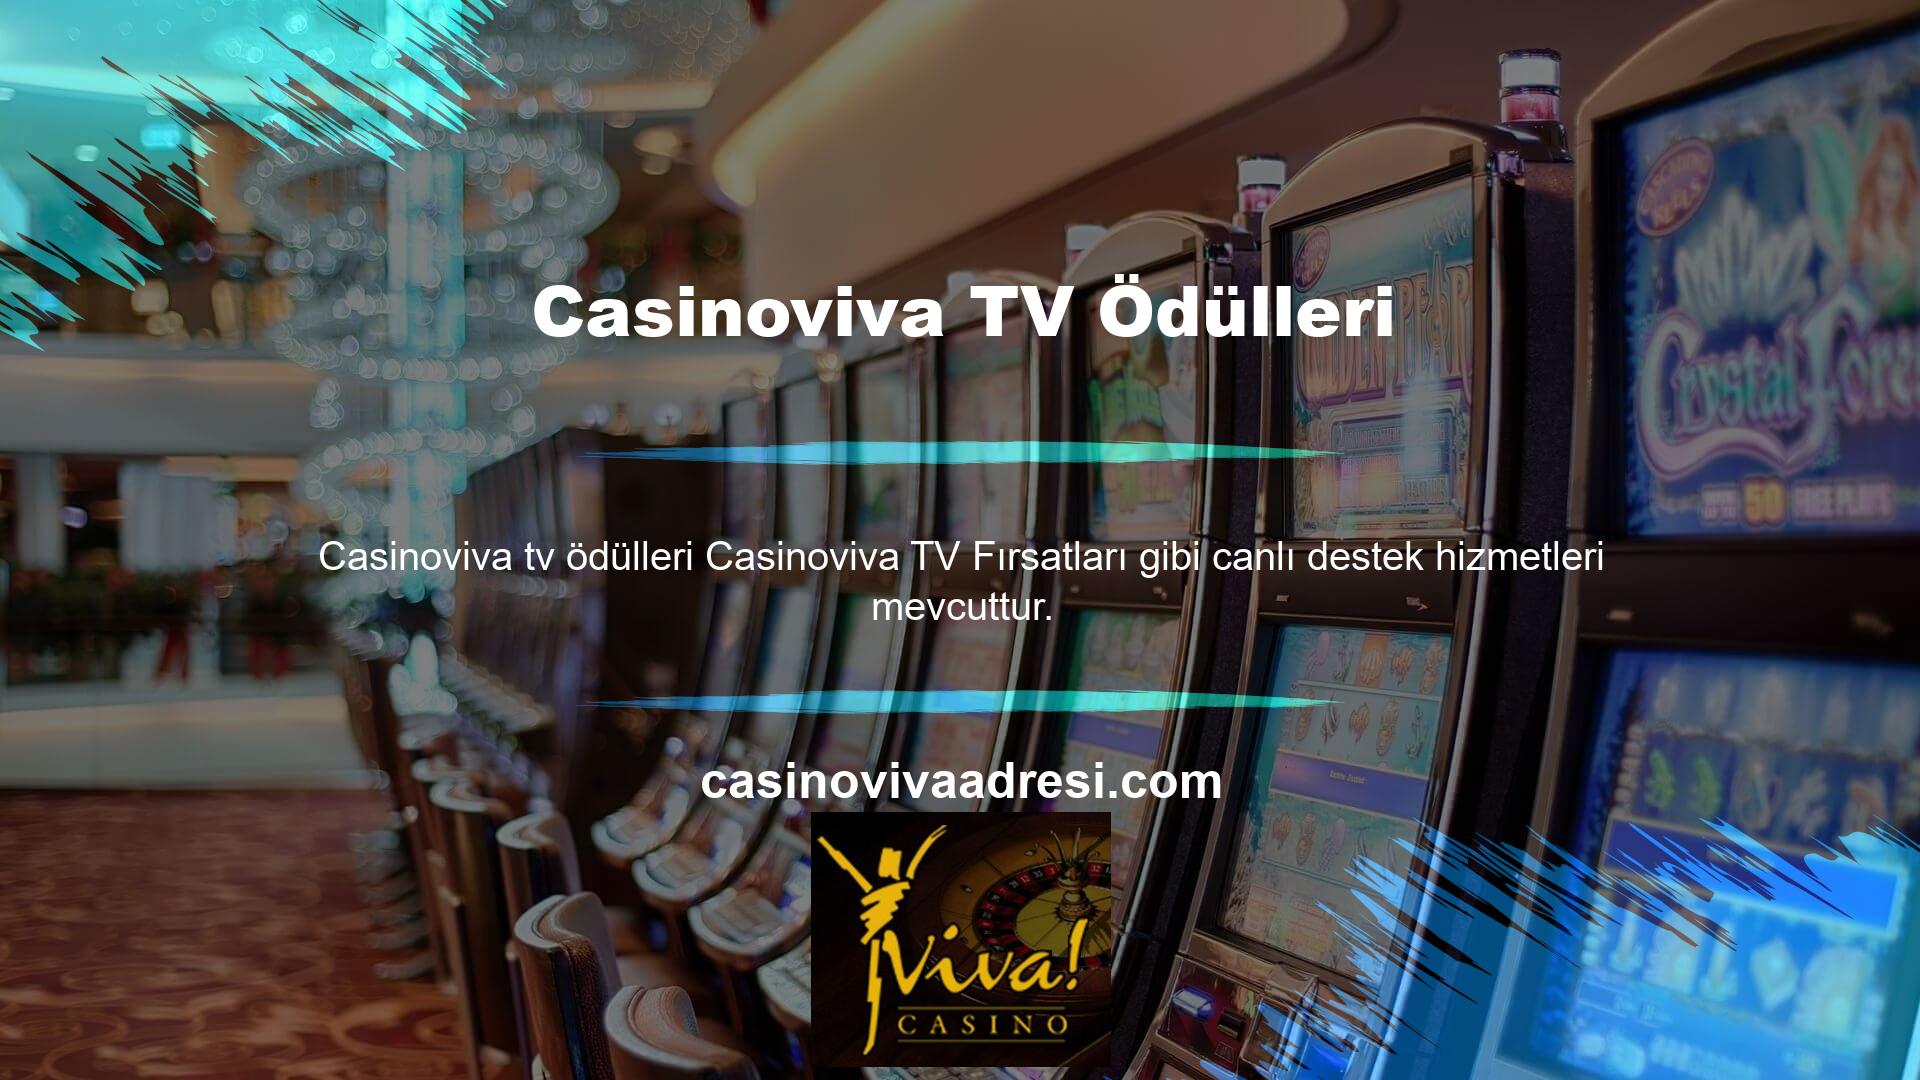 Ayrıca Casinoviva canlı destek hizmeti ile casino sitesi kullanıcılarına bonus taleplerinde anında yardım sağlamaktadır